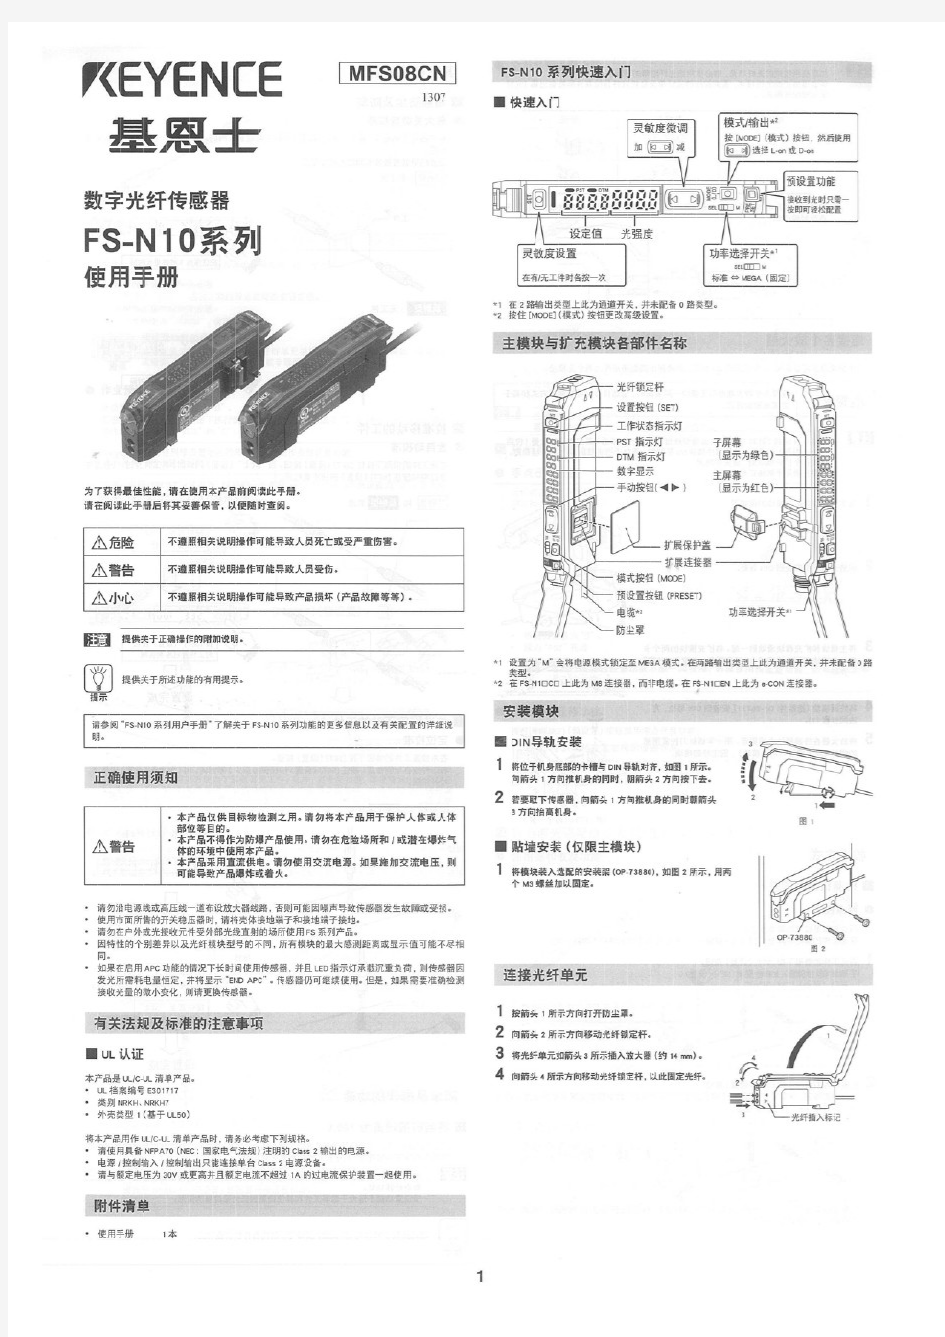 基恩士数字光纤传感器 FS-N10系列 使用手册